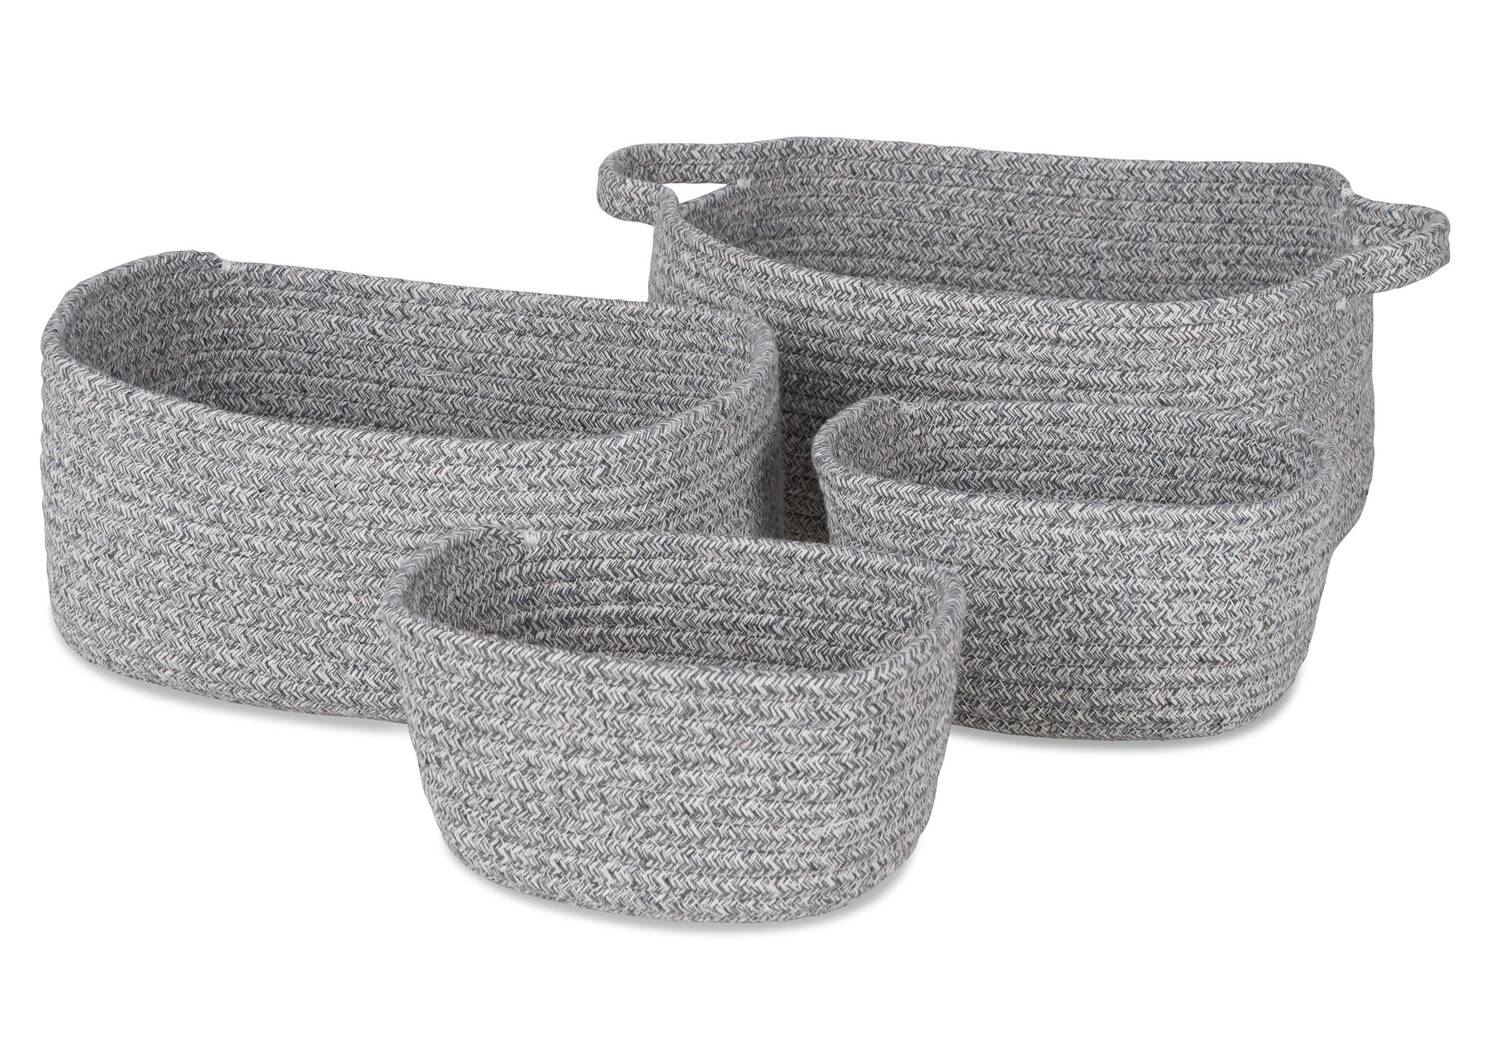 Kenrae Basket Set Grey